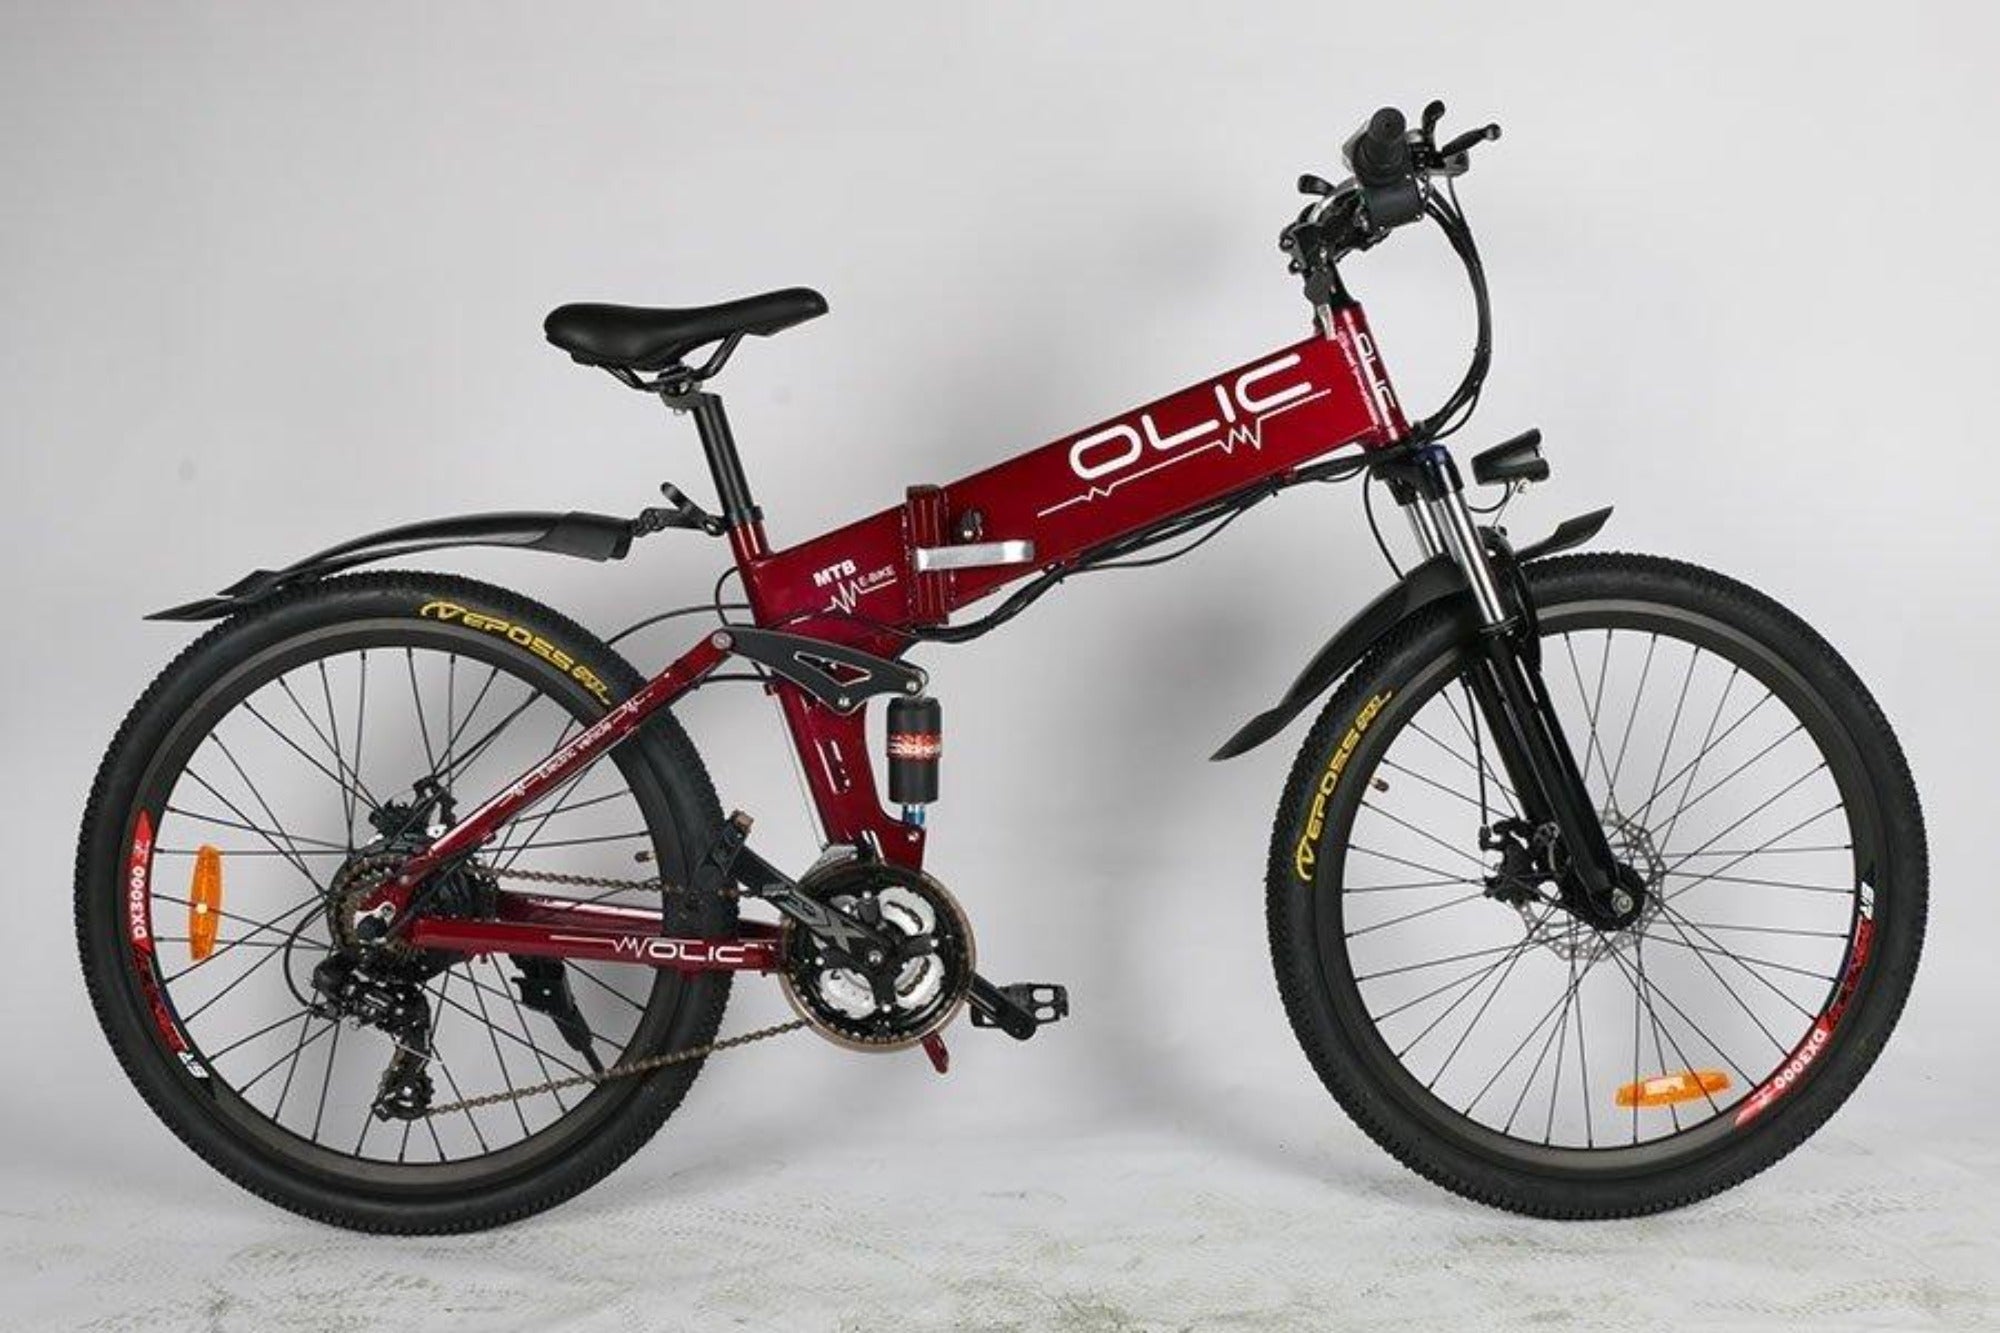 olic folding bike